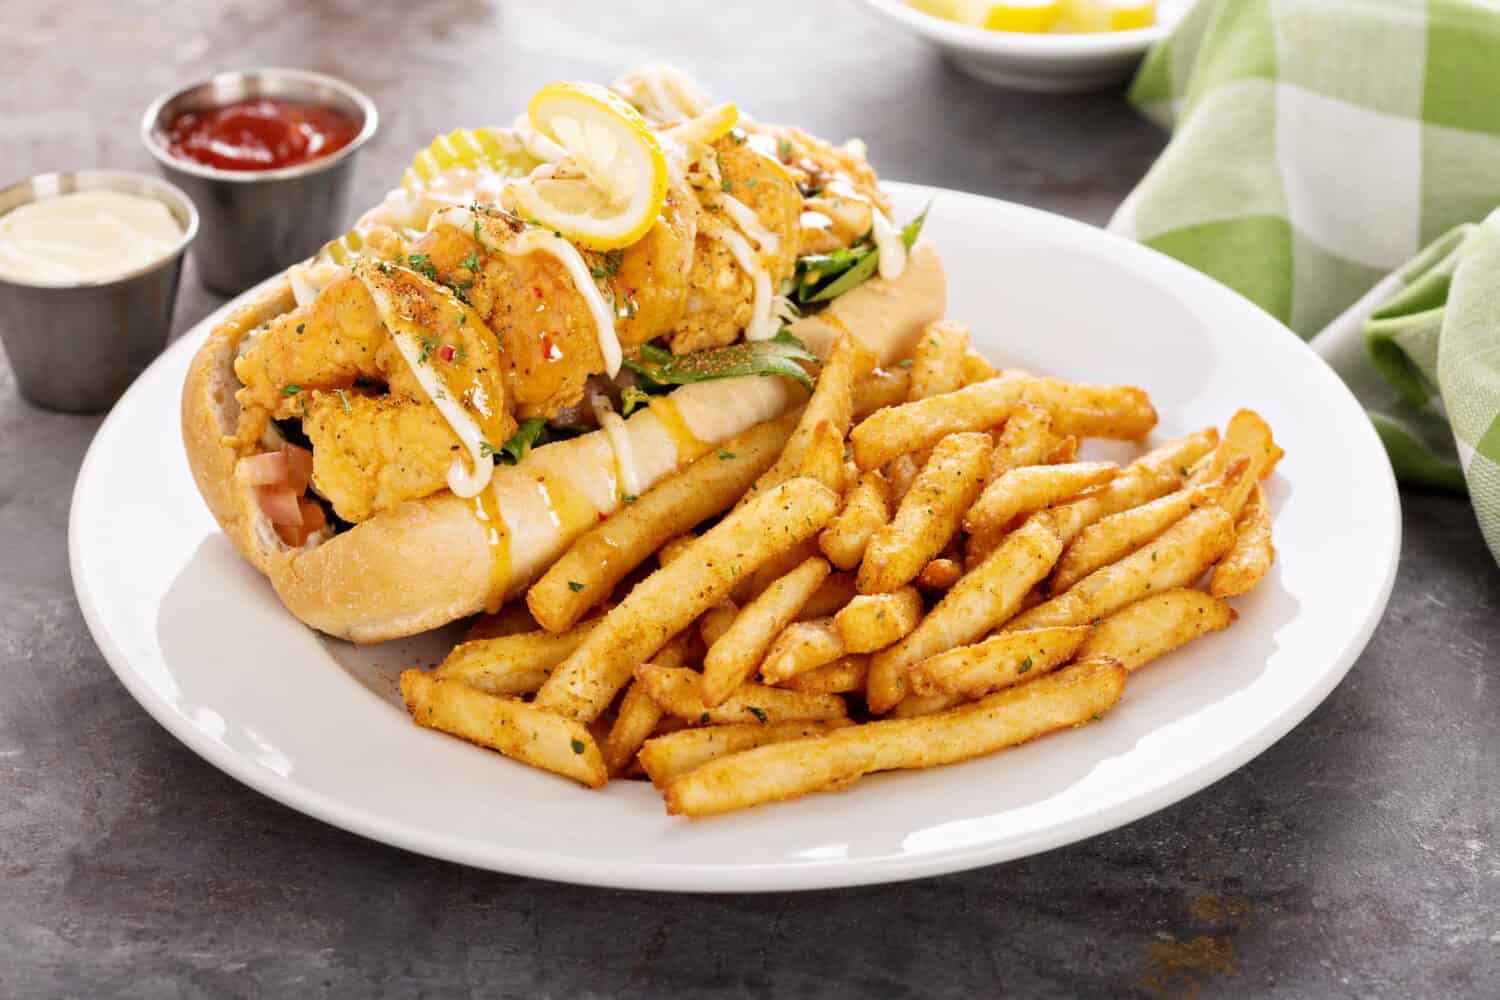 Shrimp po boy sandwich with fries served with soda